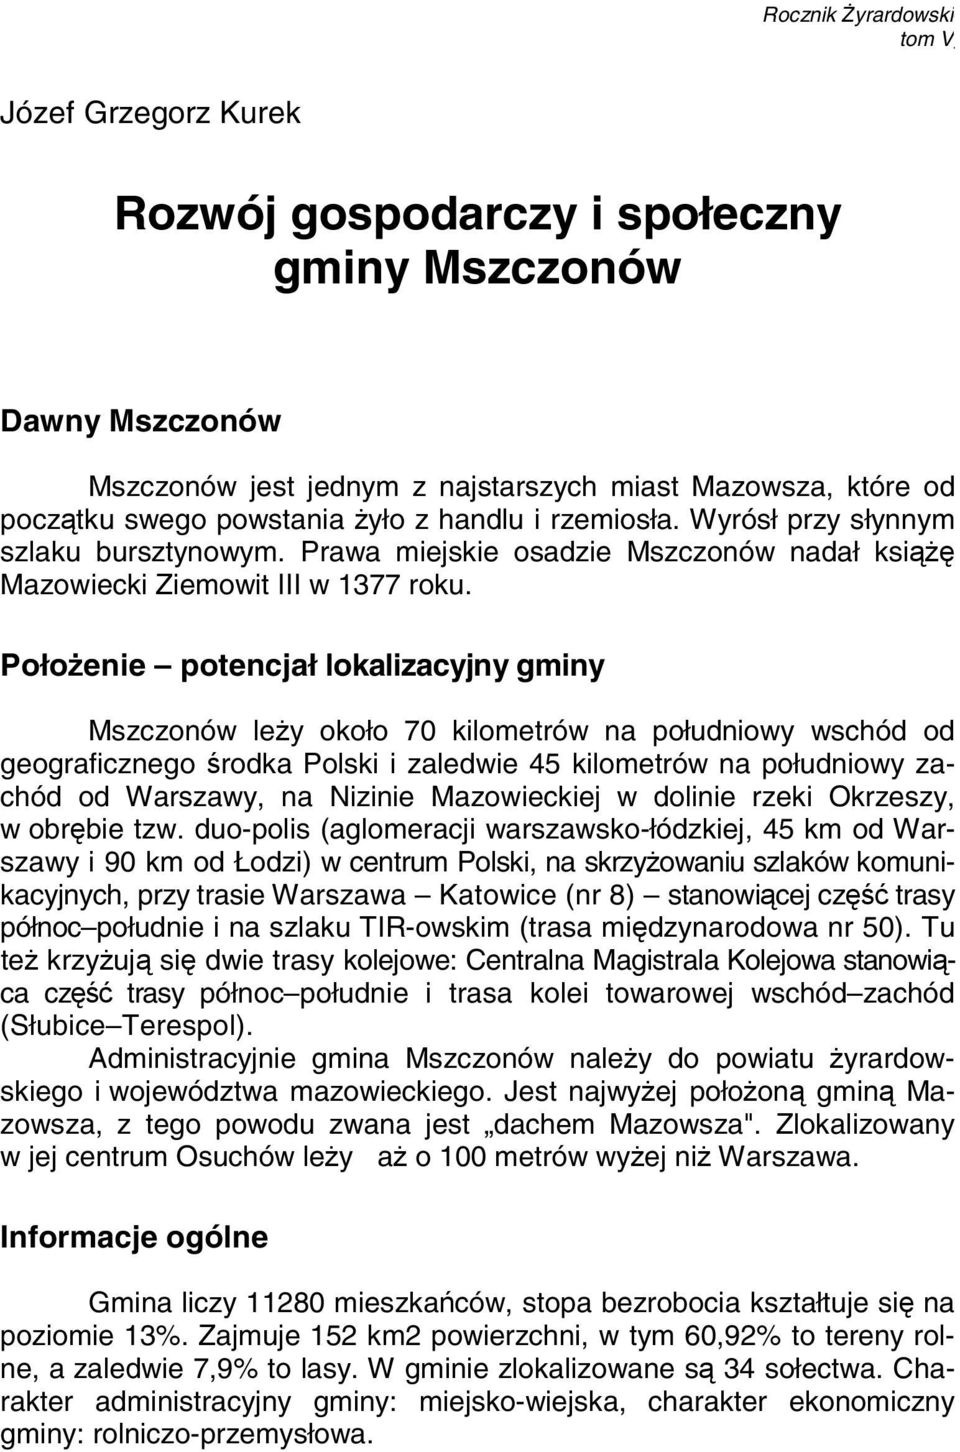 Prawa miejskie osadzie Mszczonów nadał książę Mazowiecki Ziemowit III w 1377 roku.